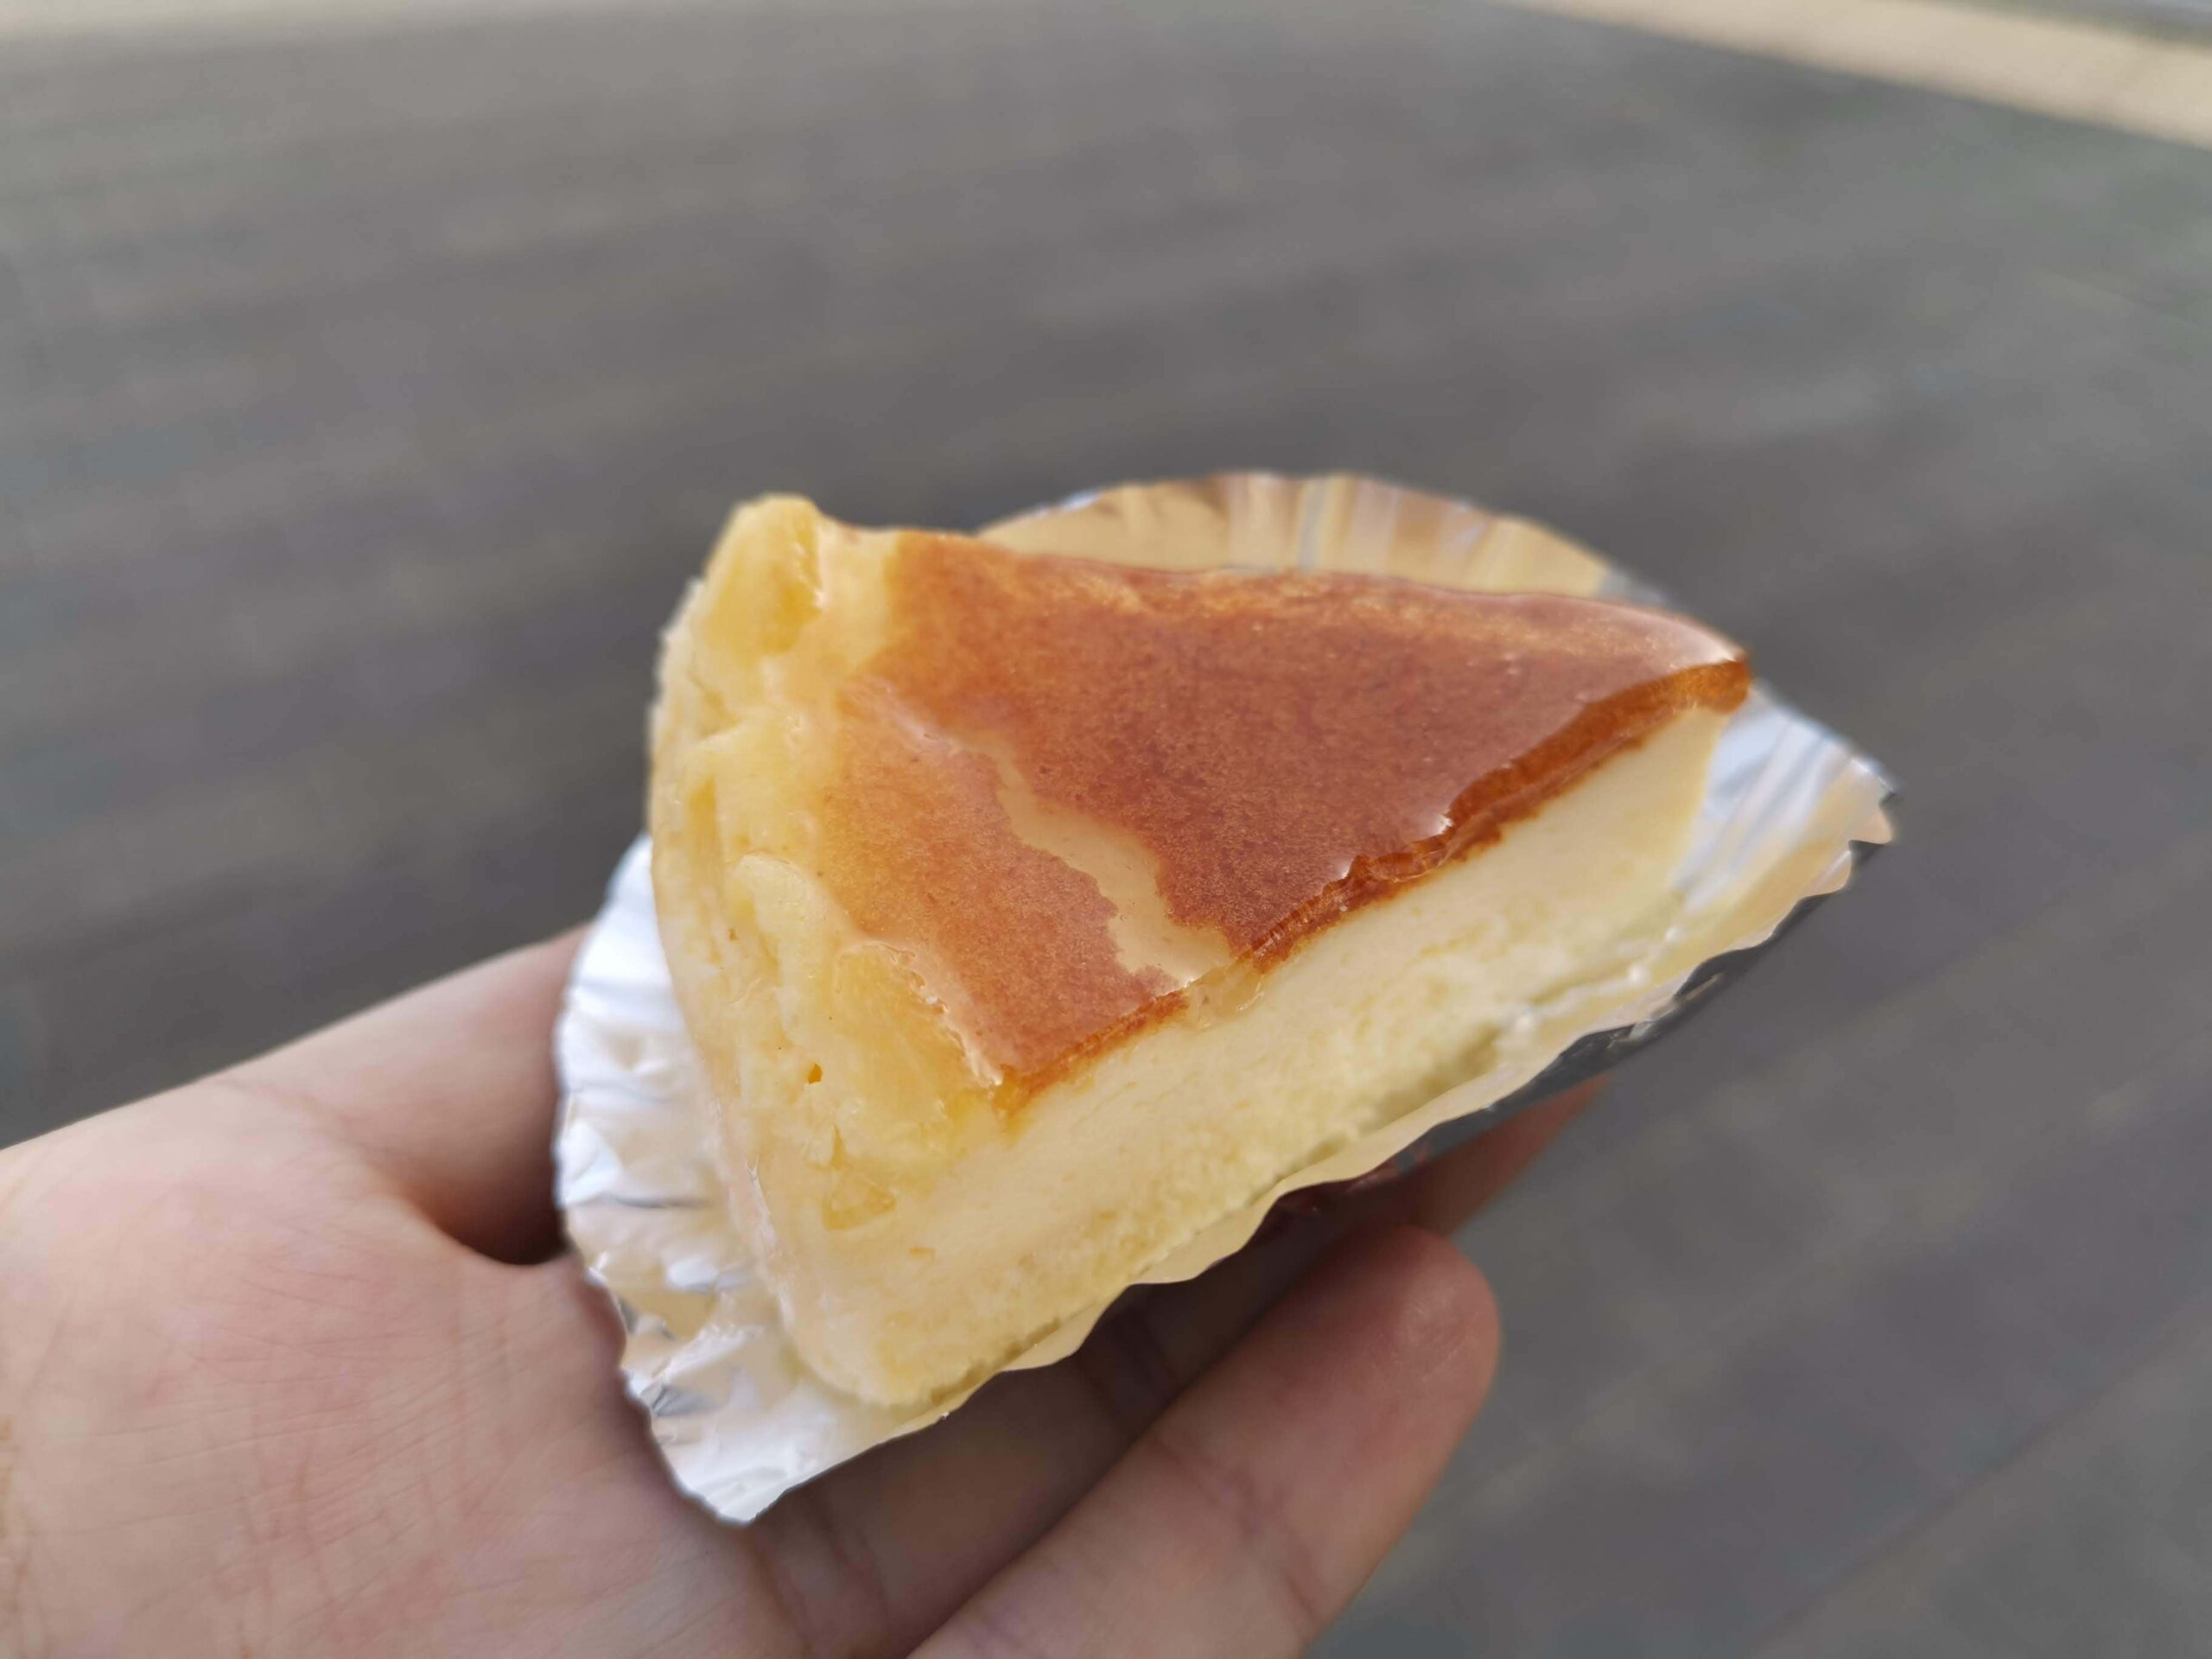 大泉学園のトレント洋菓子店のチーズケーキの写真 (3)